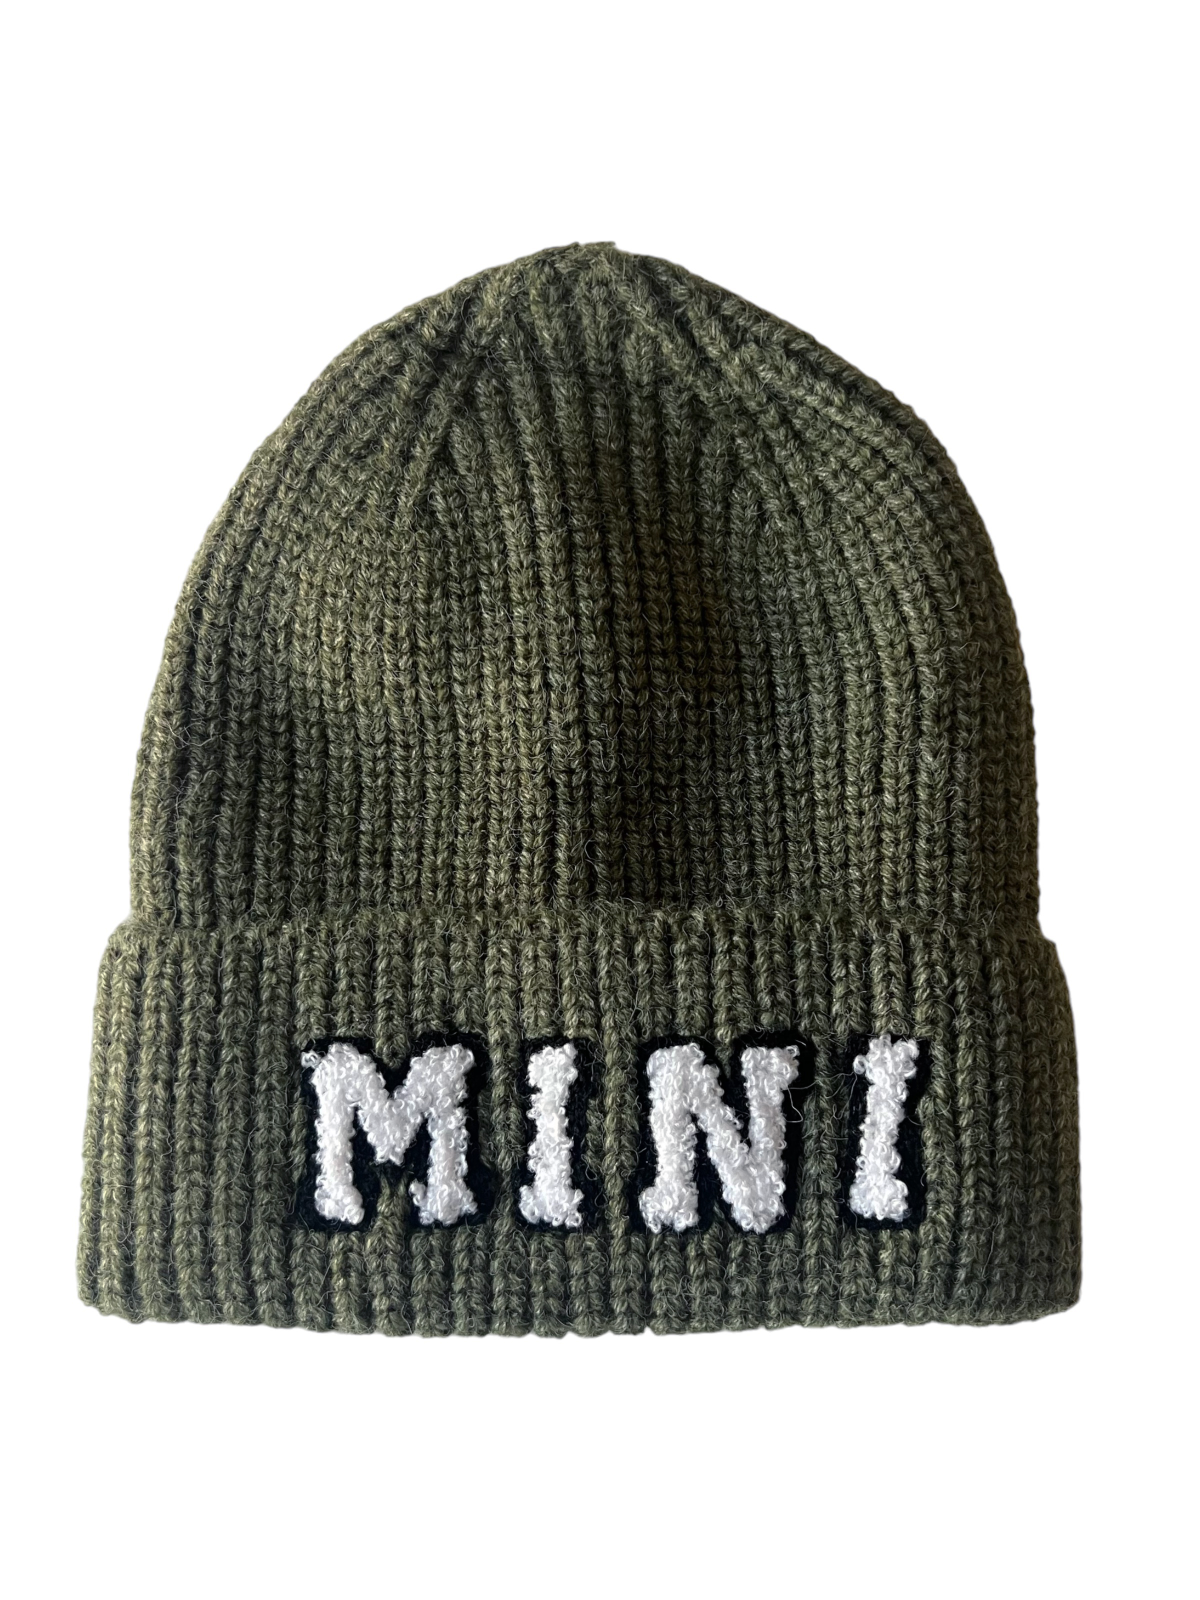 Mini Knit Hat, Wilderness